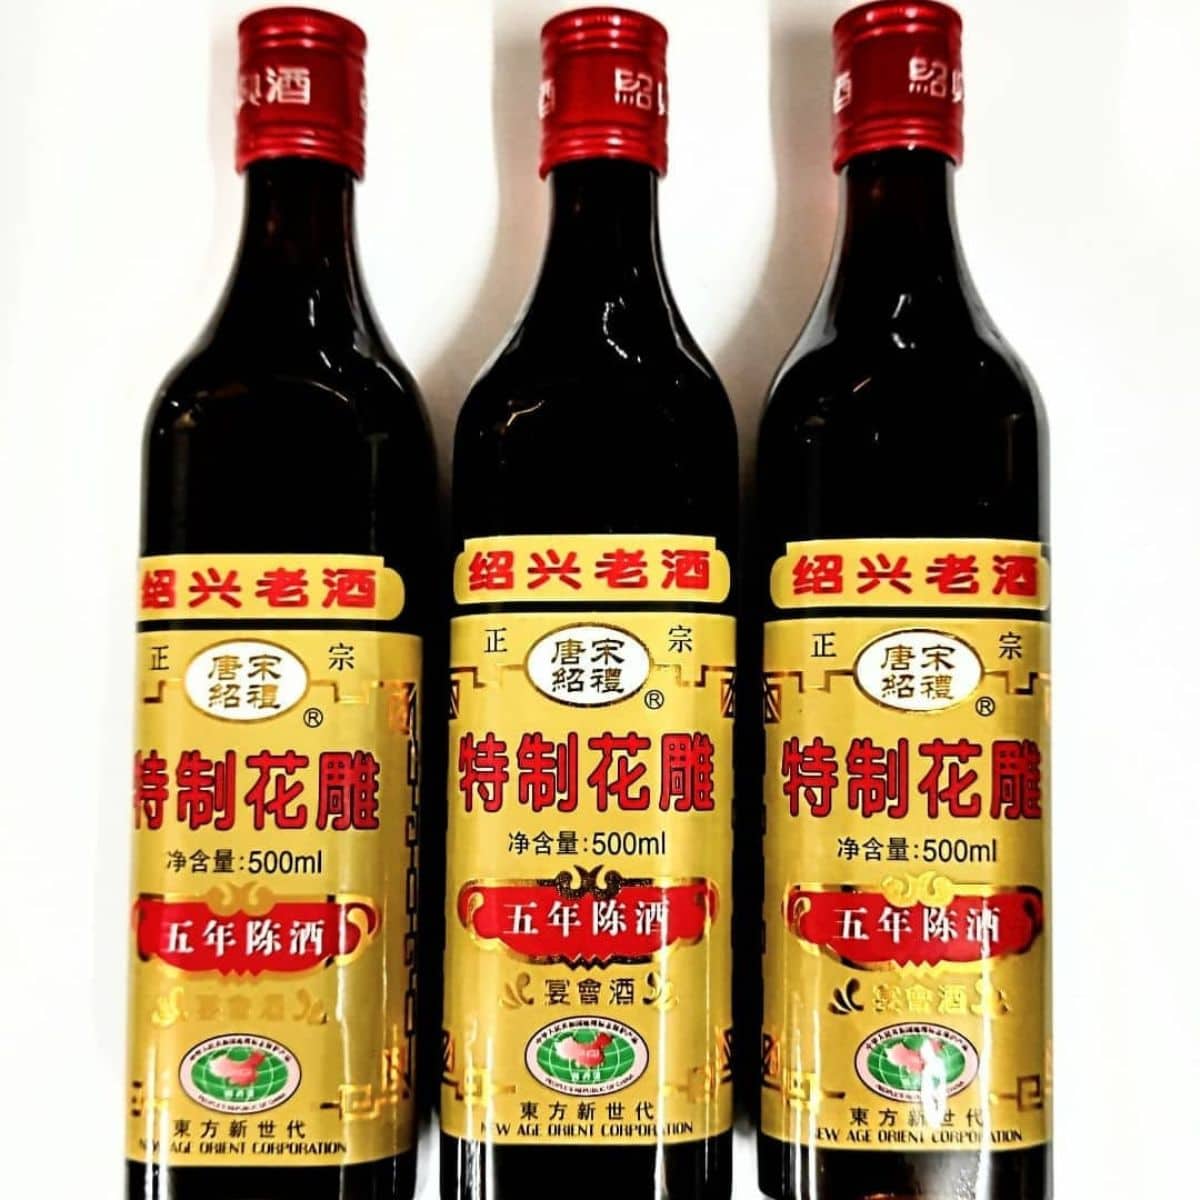 shaoxing wine chinese